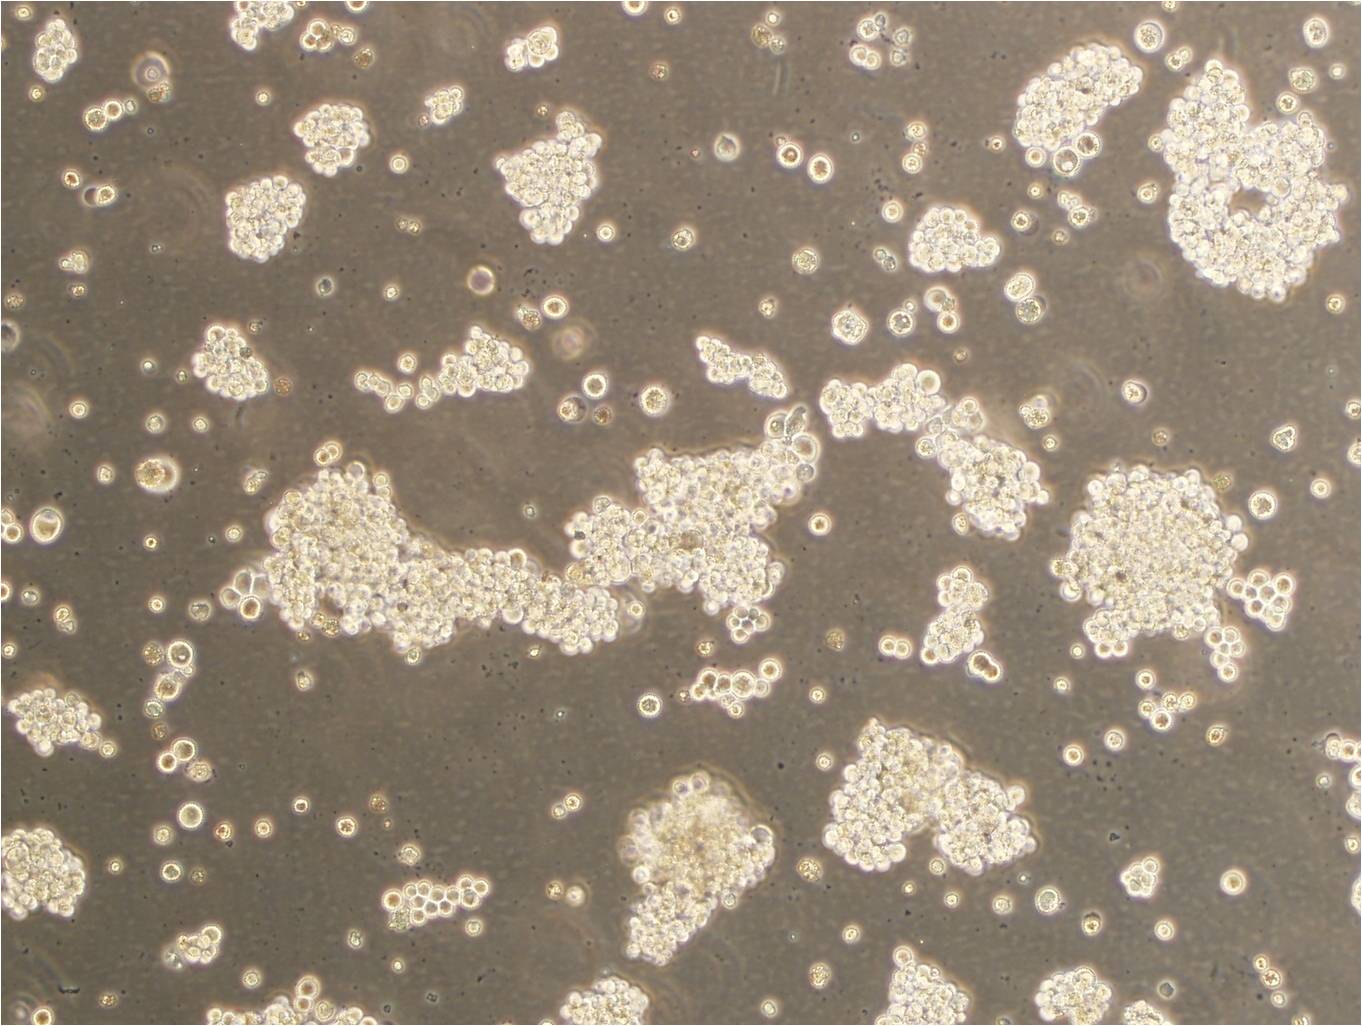 SU-DHL-4细胞：人弥漫性组织淋巴瘤细胞系,SU-DHL-4